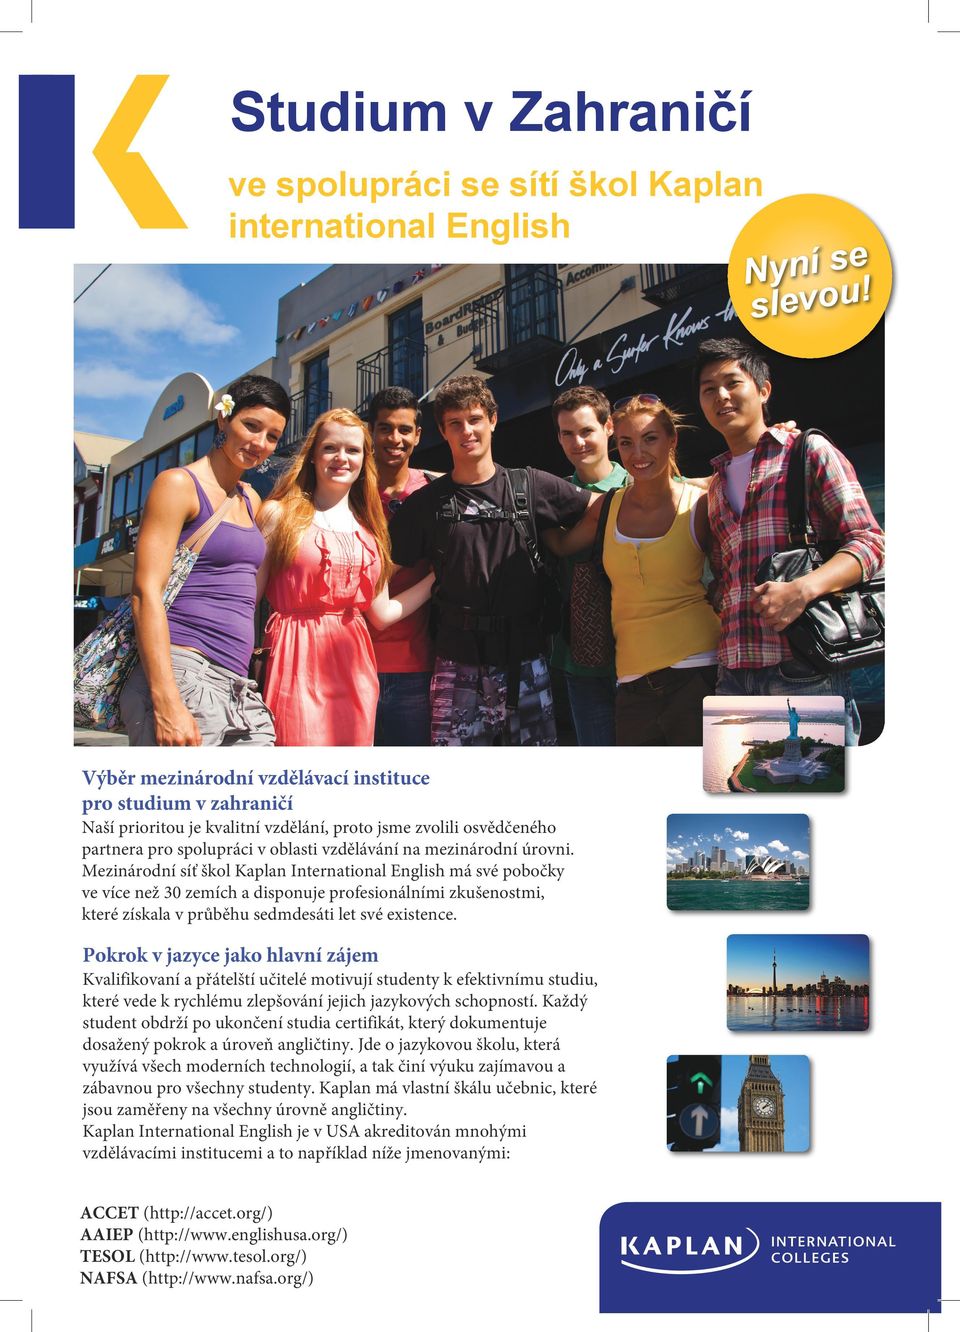 úrovni. Mezinárodní síť škol Kaplan International English má své pobočky ve více než 30 zemích a disponuje profesionálními zkušenostmi, které získala v průběhu sedmdesáti let své existence.